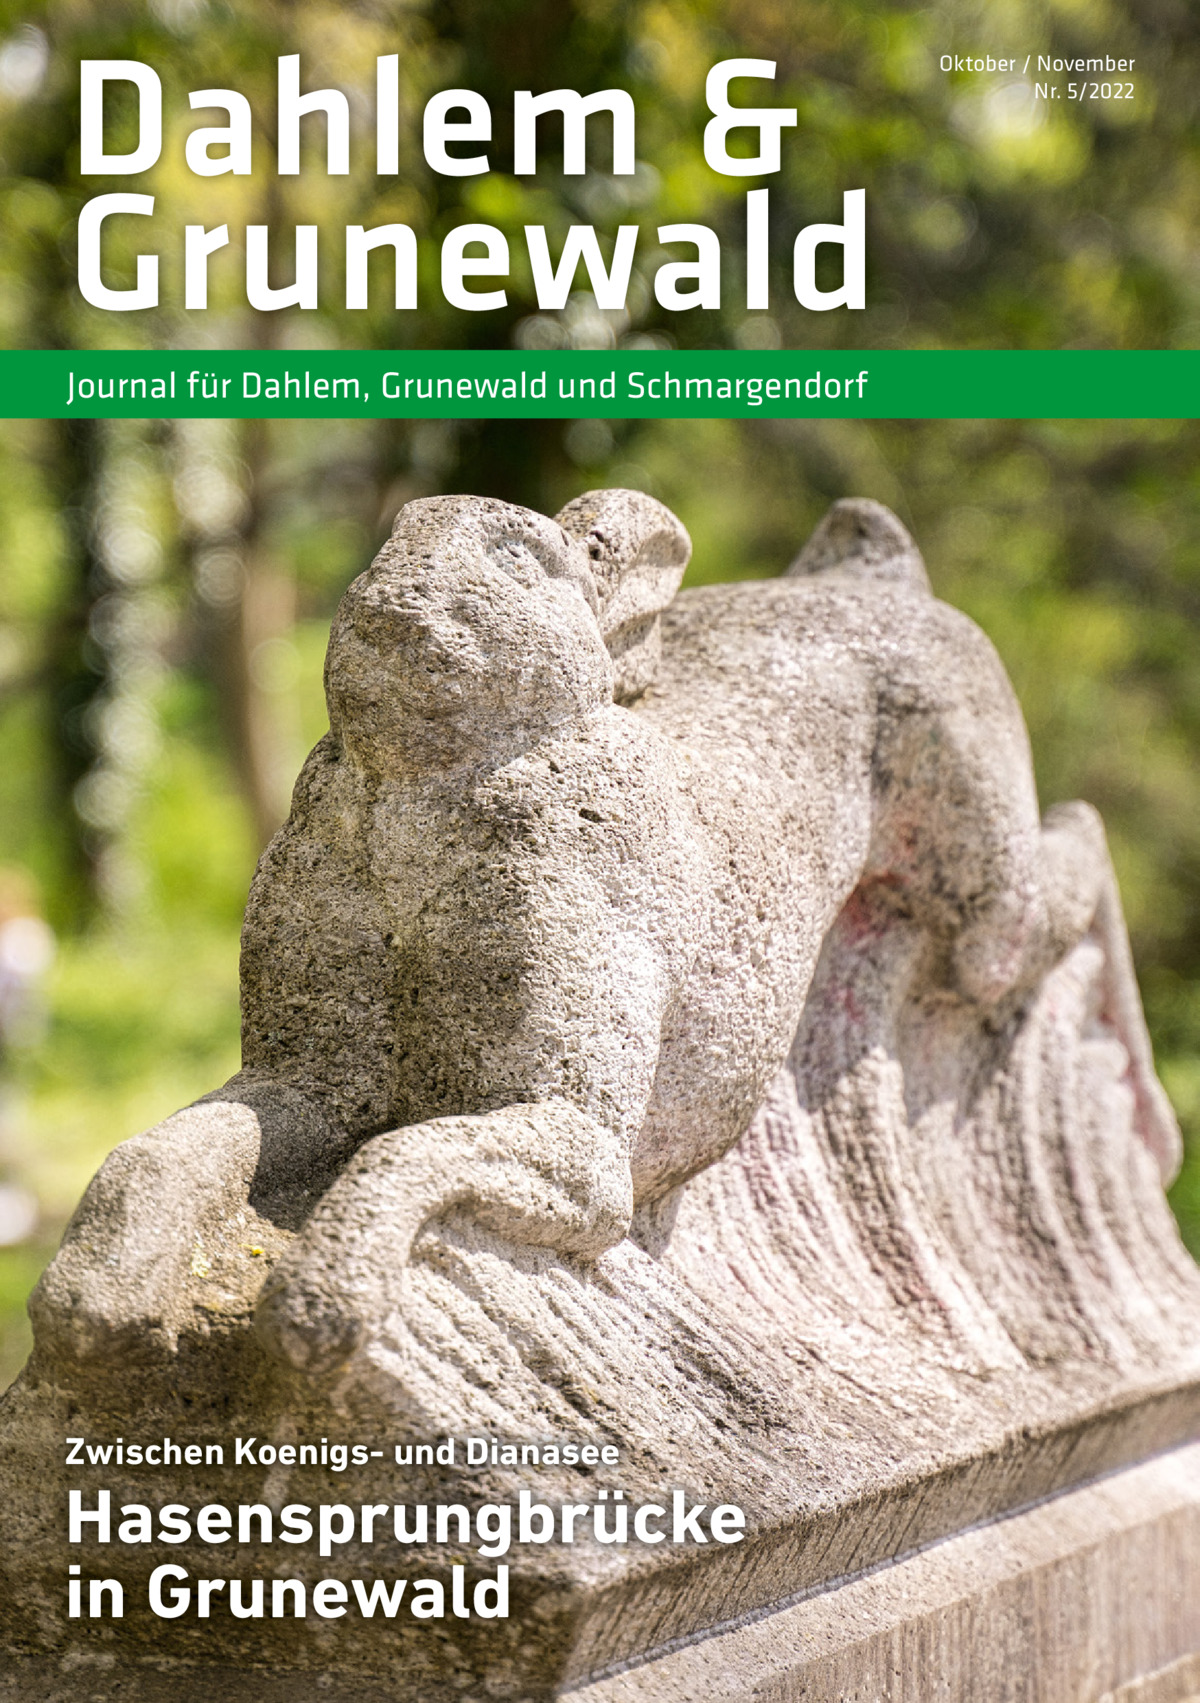 Dahlem & Grunewald Journal für Dahlem, Grunewald und Schmargendorf  Zwischen Koenigs- und Dianasee  Hasensprungbrücke in Grunewald  Oktober / November Nr. 5/2022